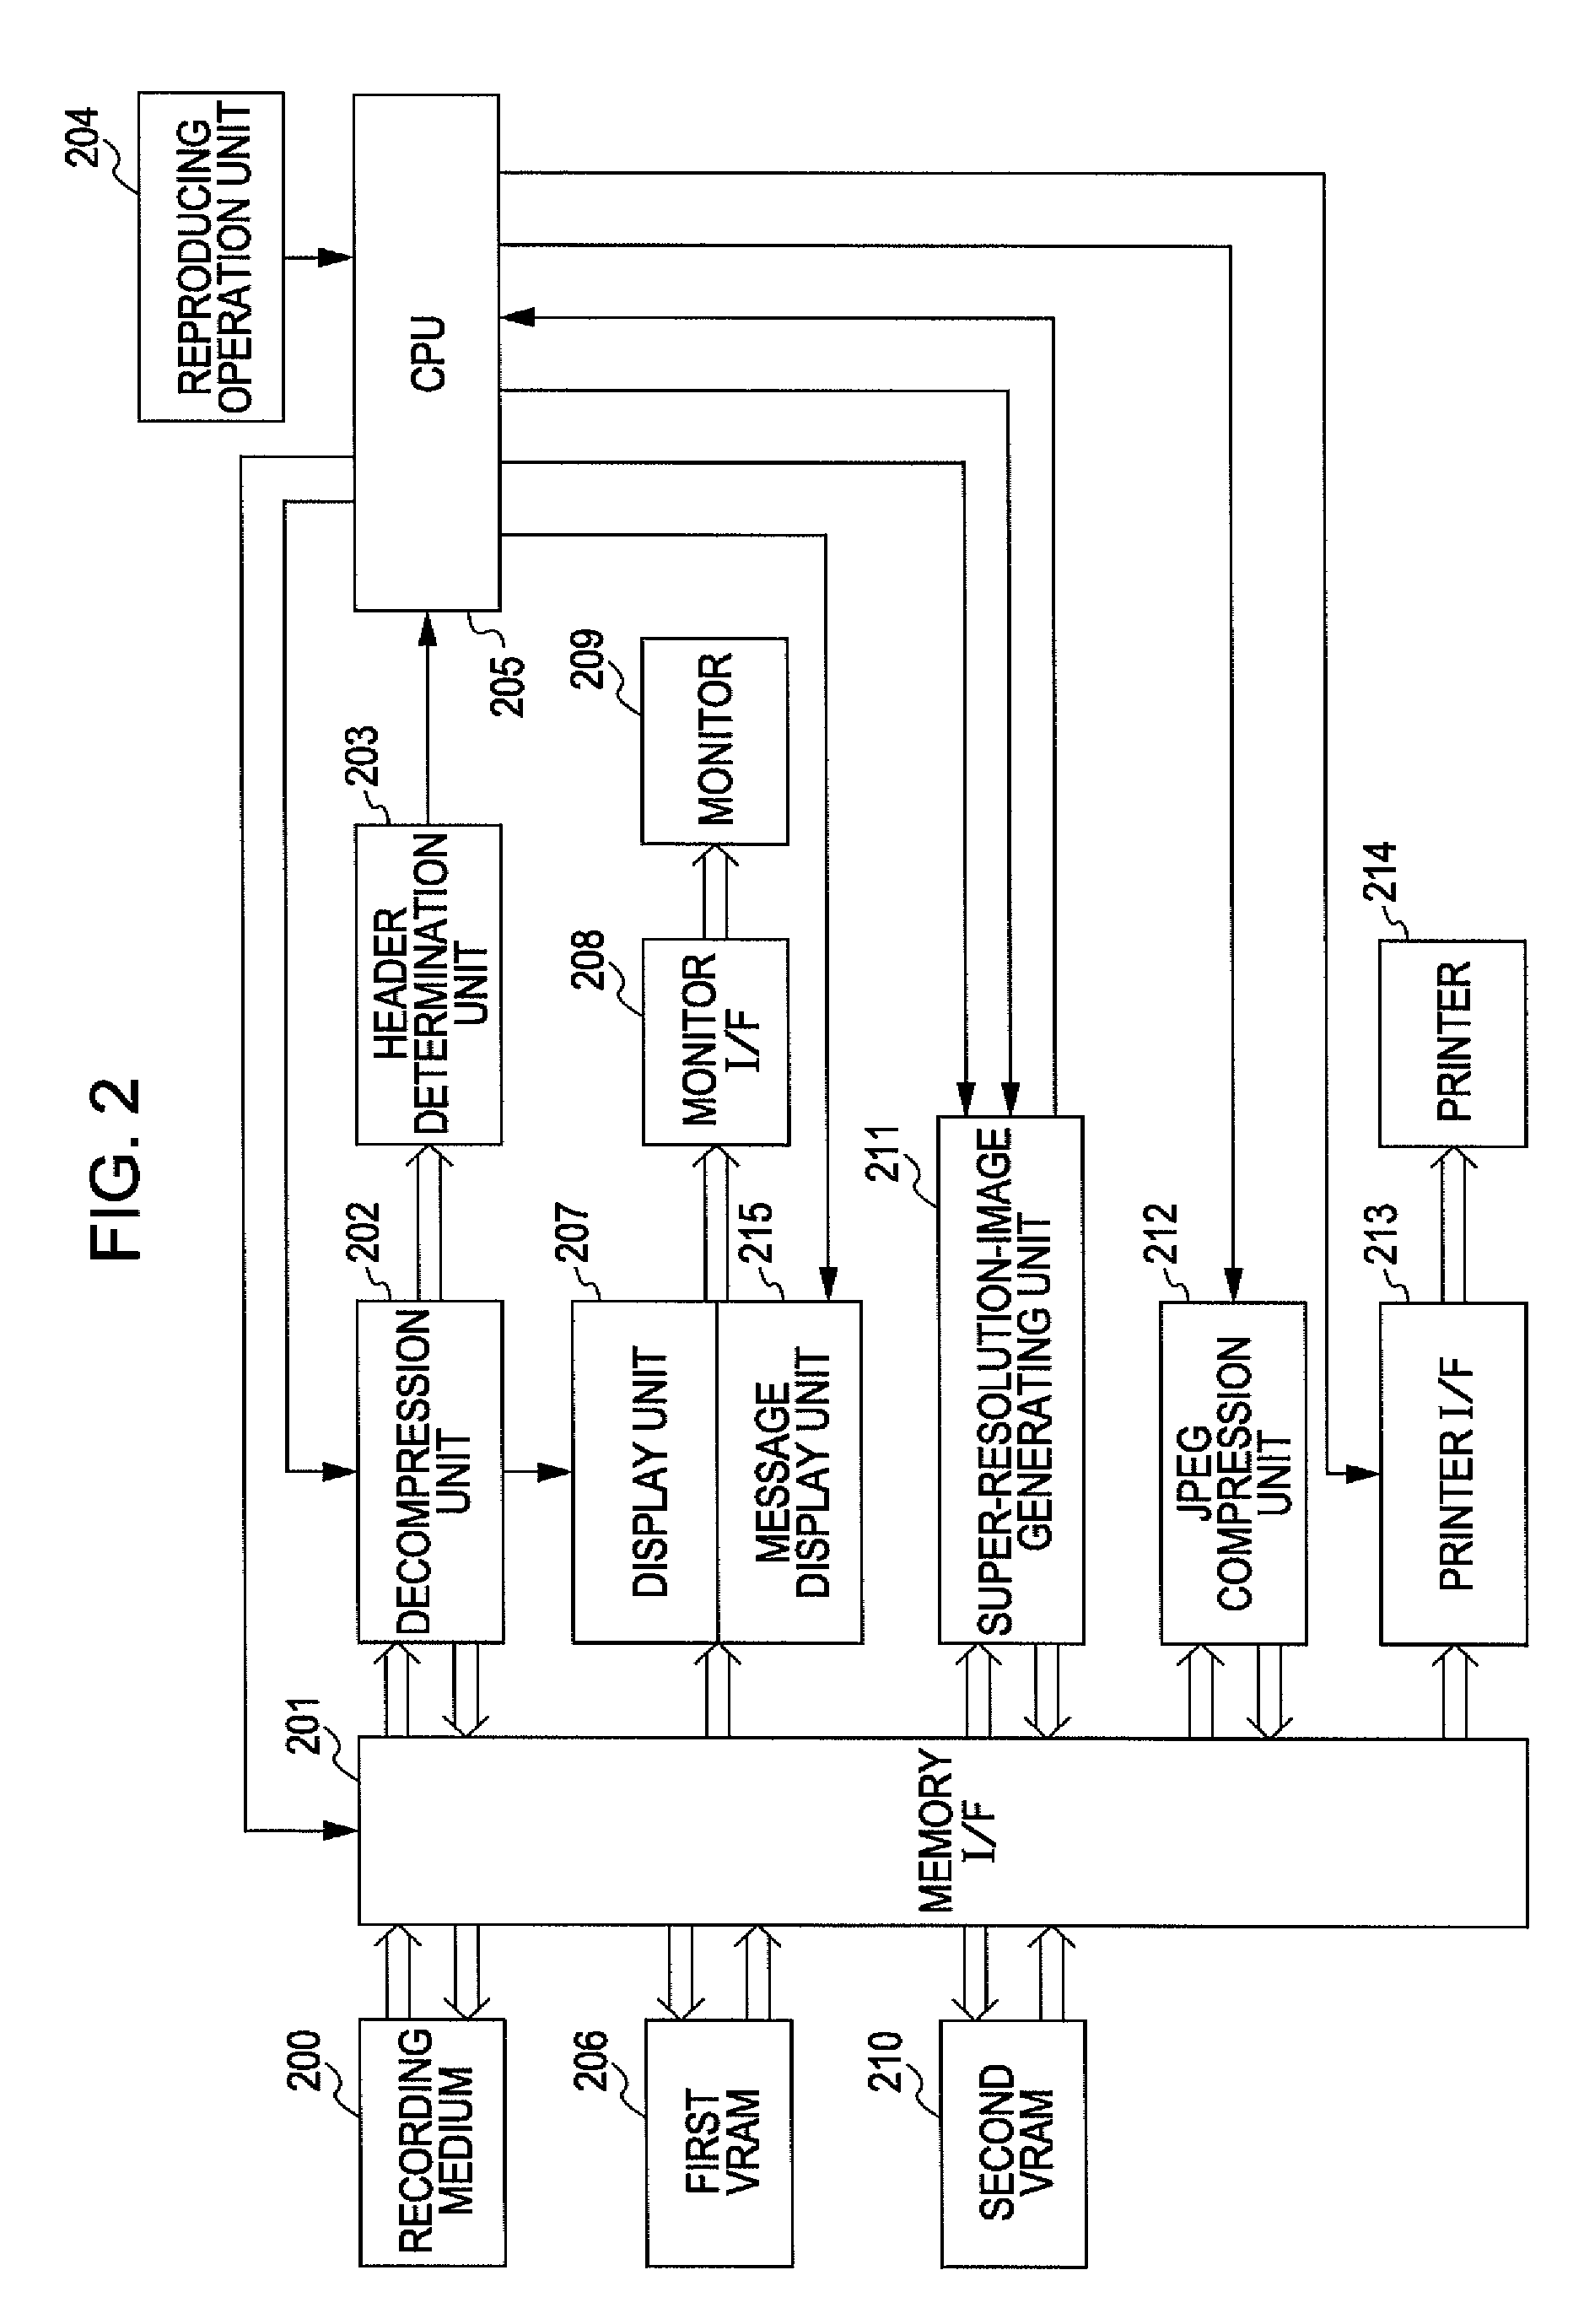 Image pickup apparatus and reproducing apparatus